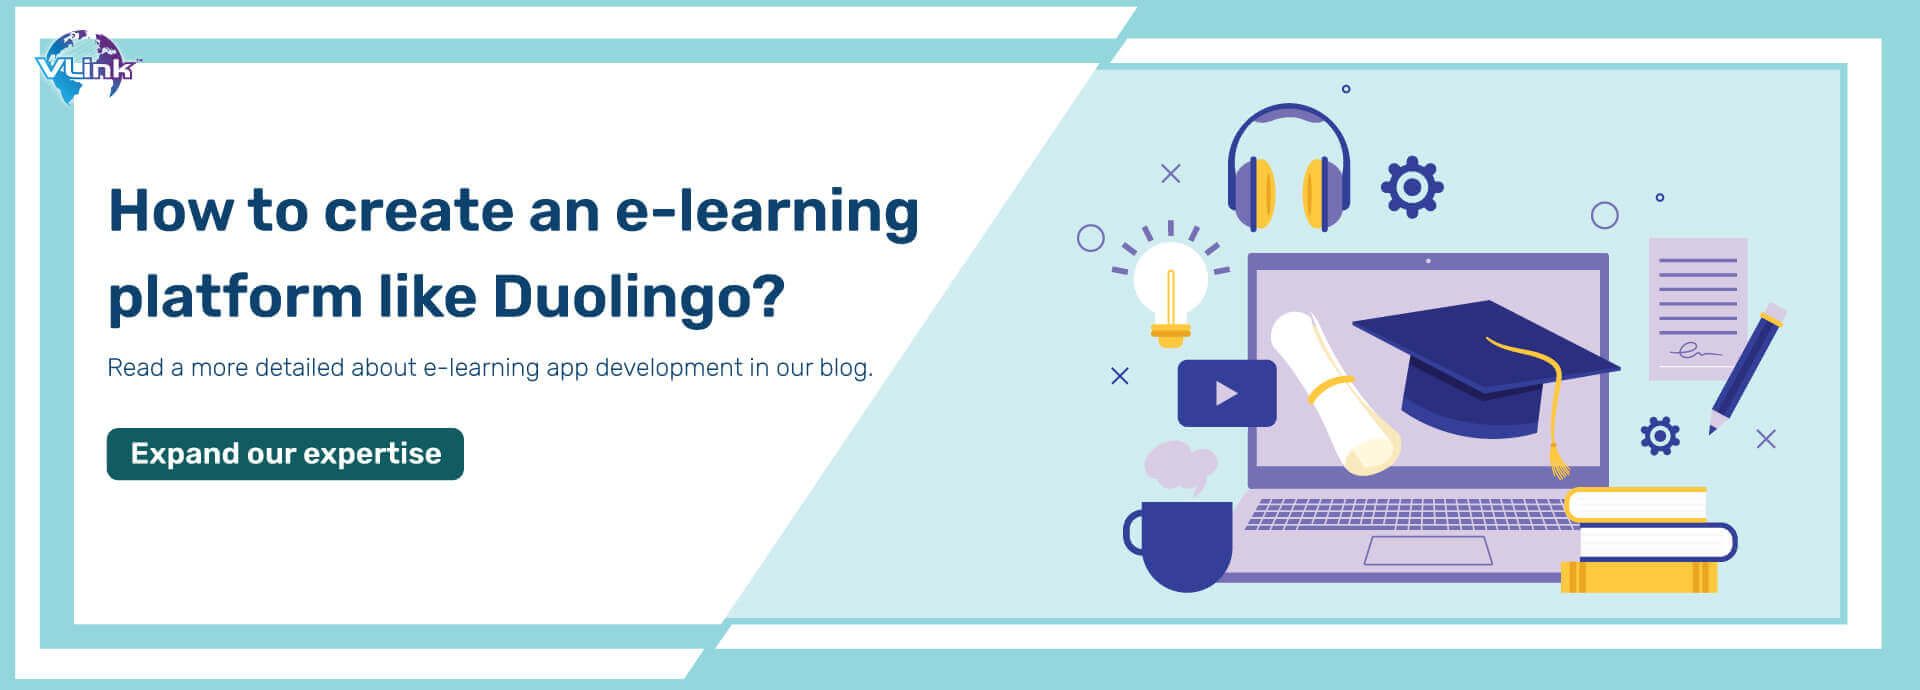 How to create an e-learning platform like Duolingo